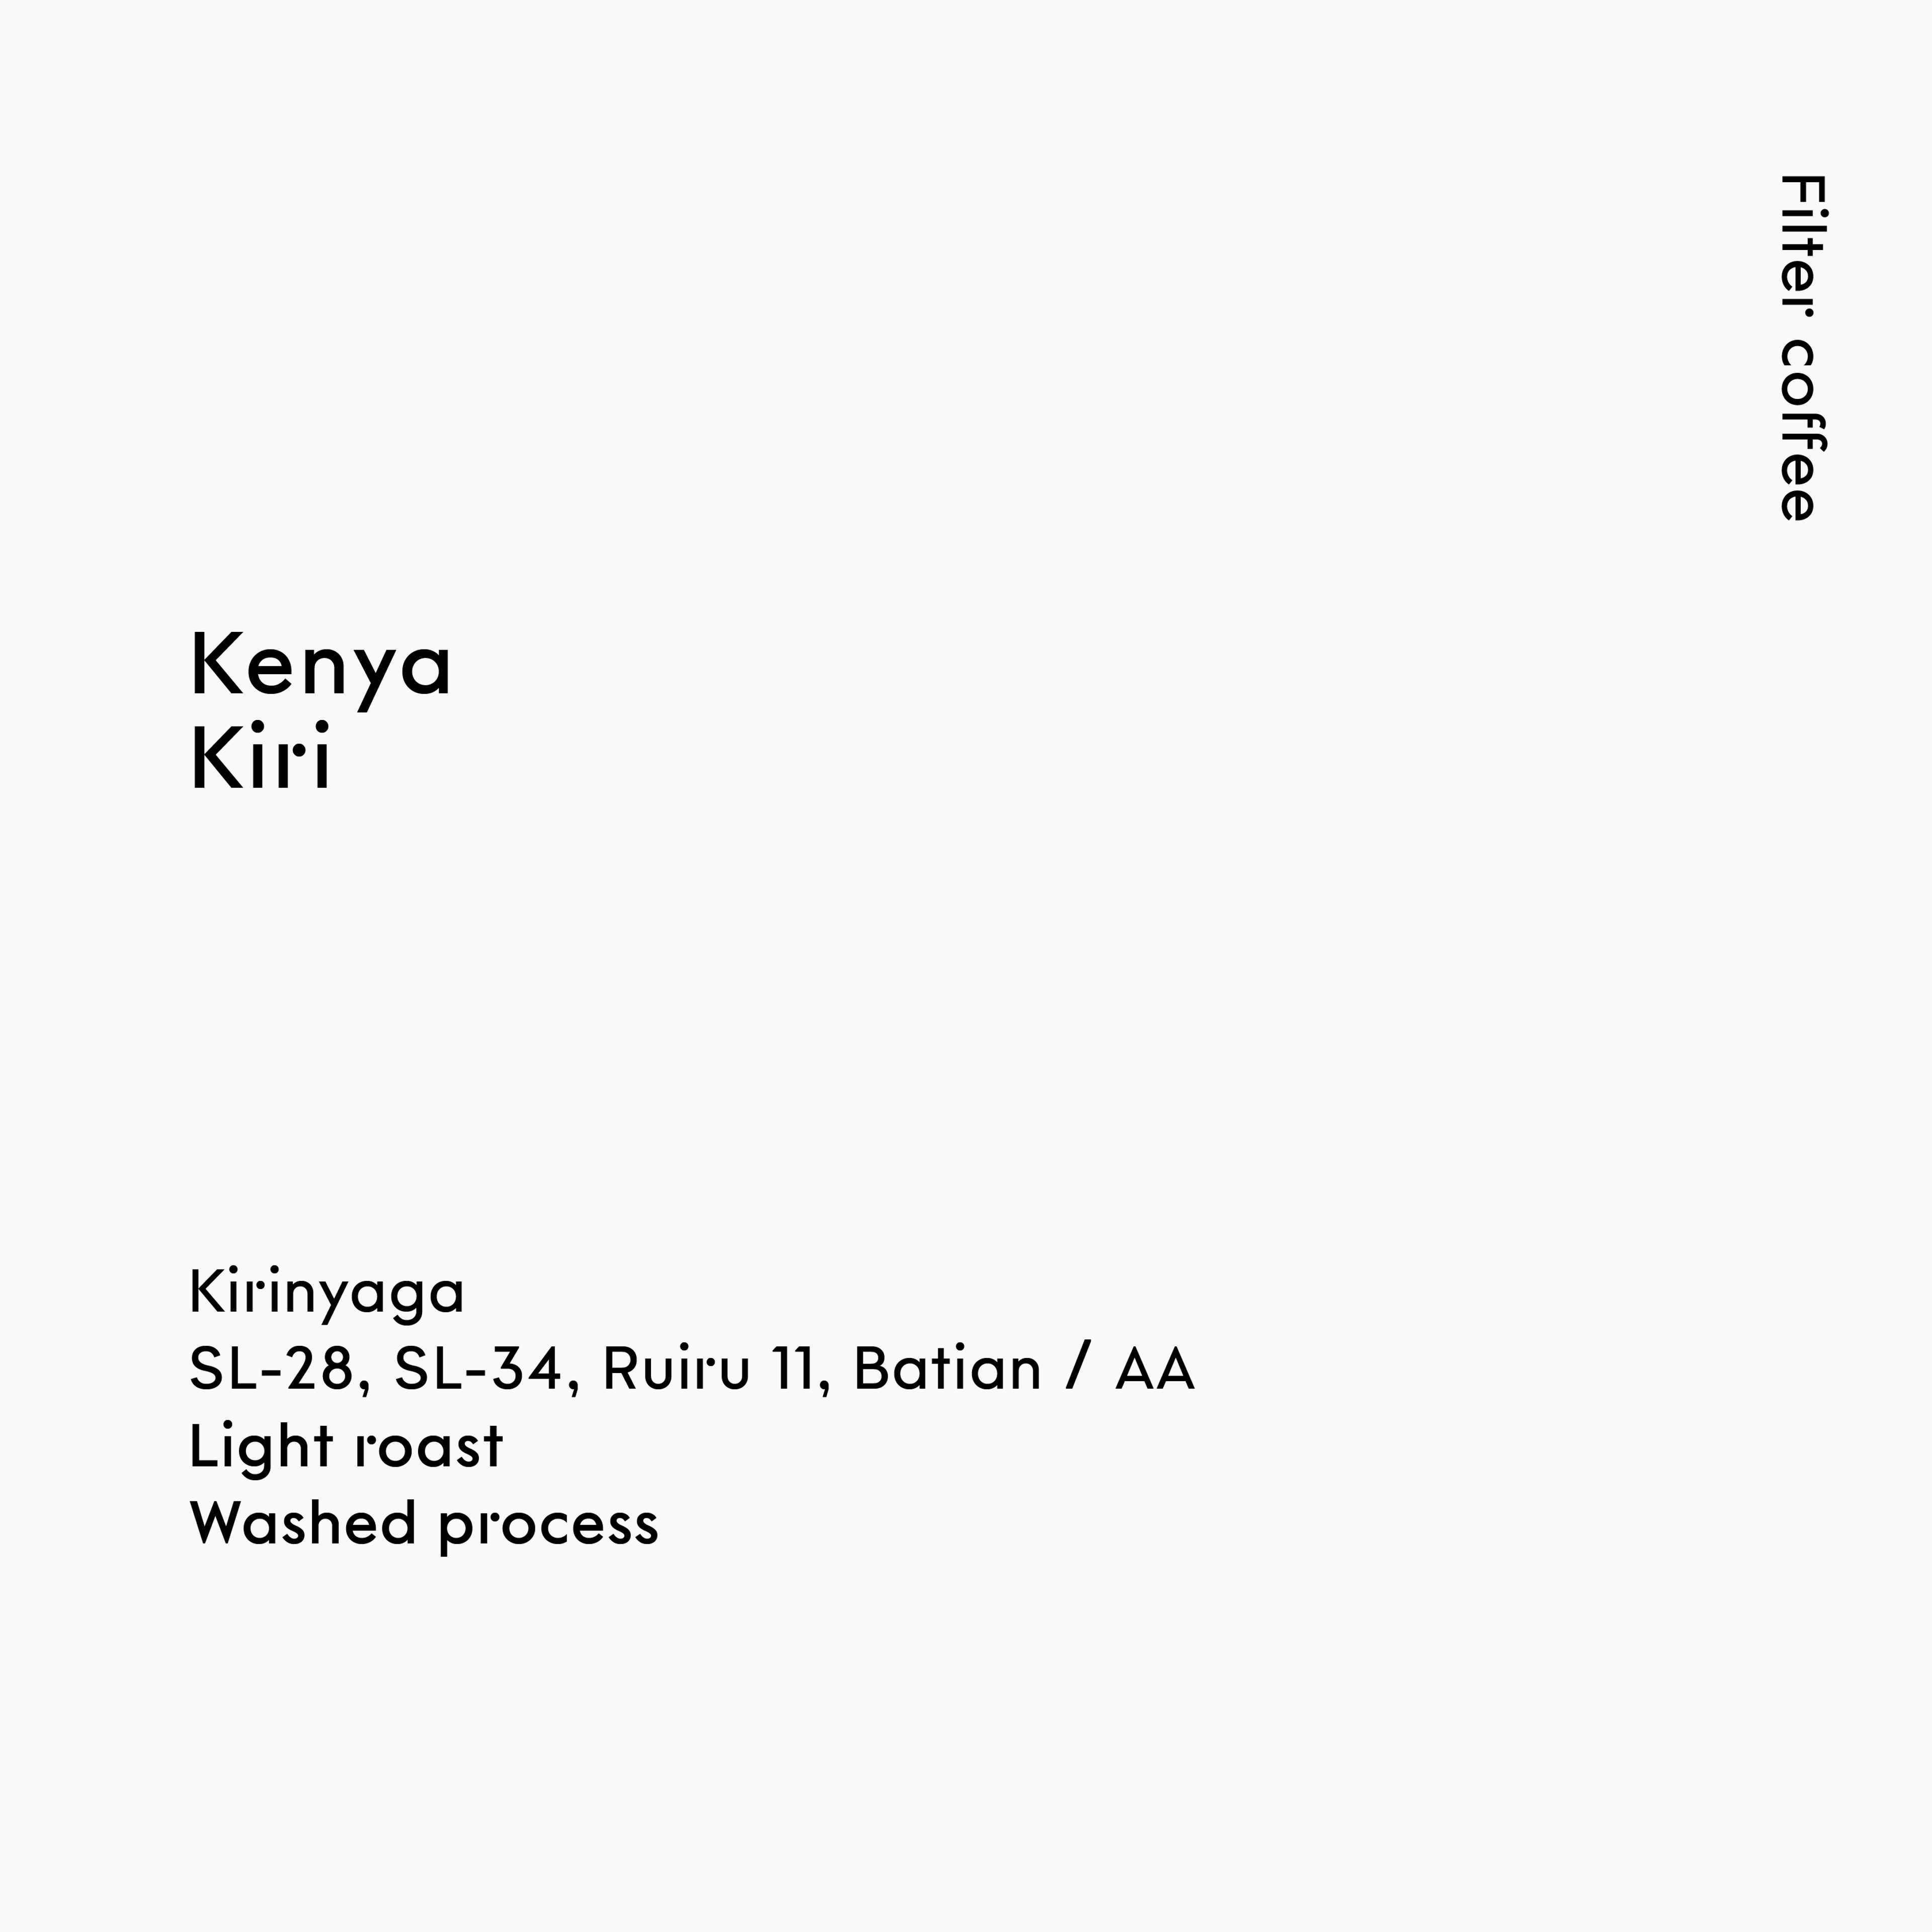 Kenya Kiri